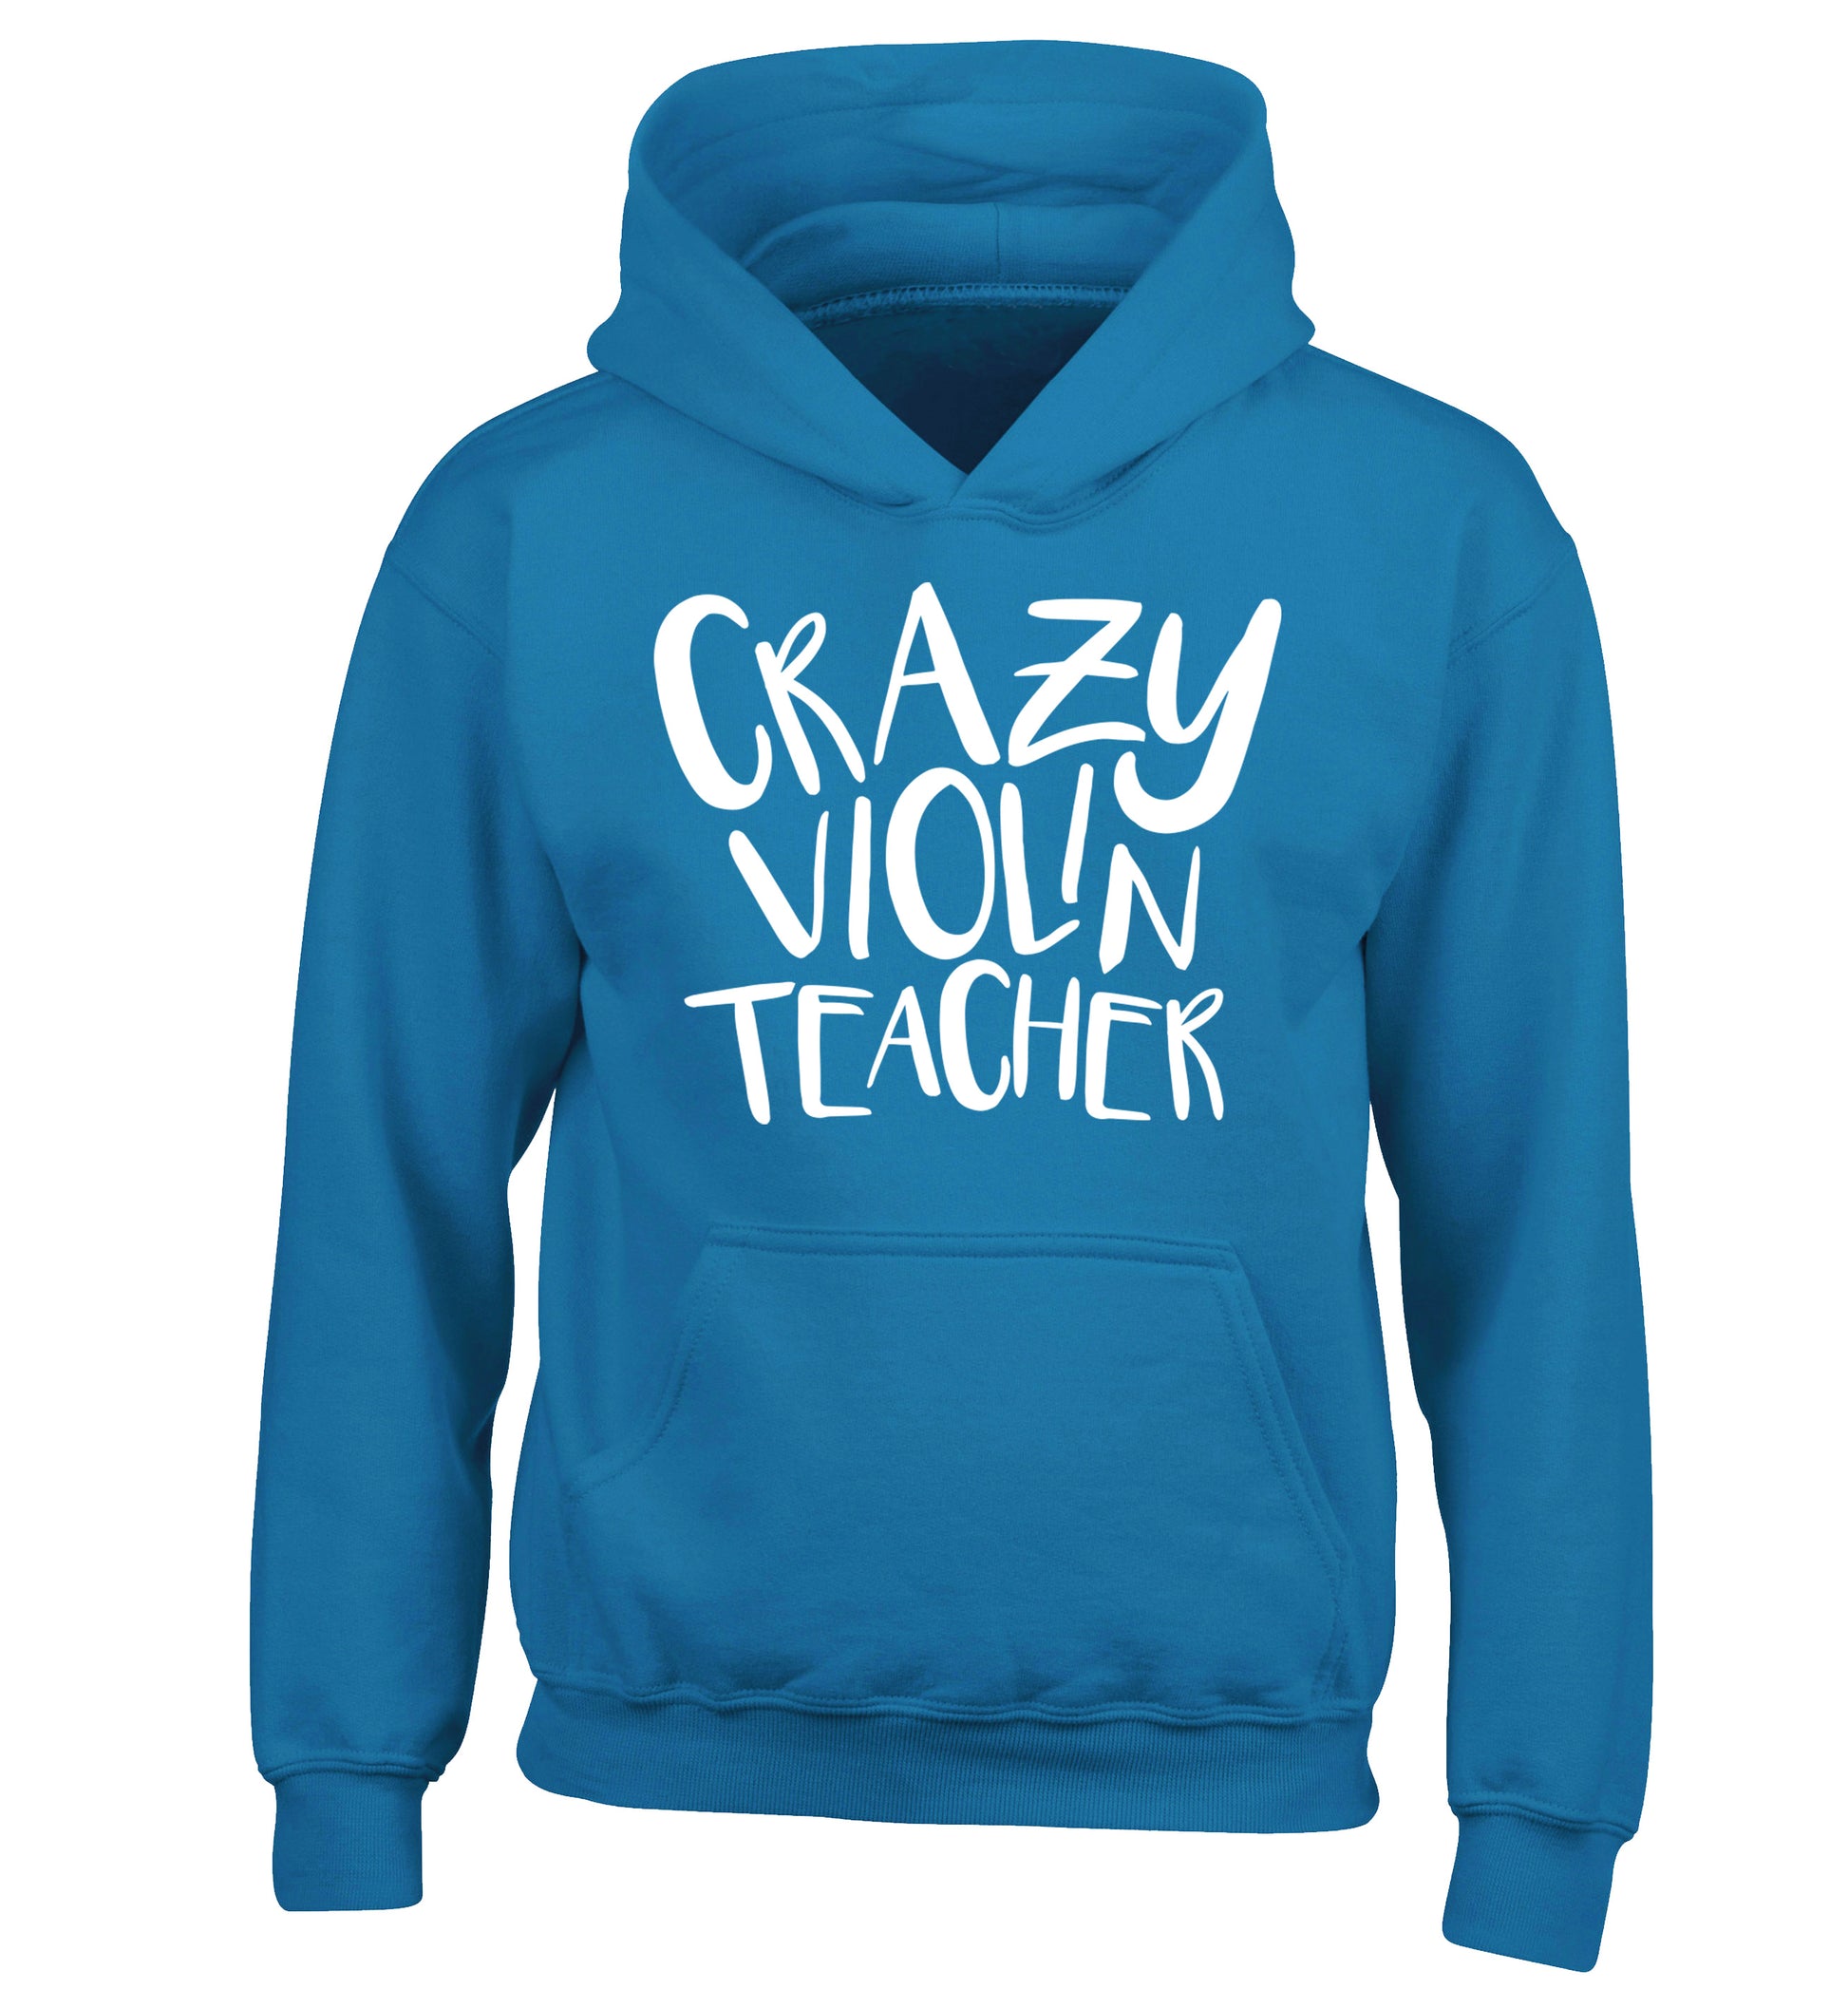 Crazy violin teacher children's blue hoodie 12-13 Years